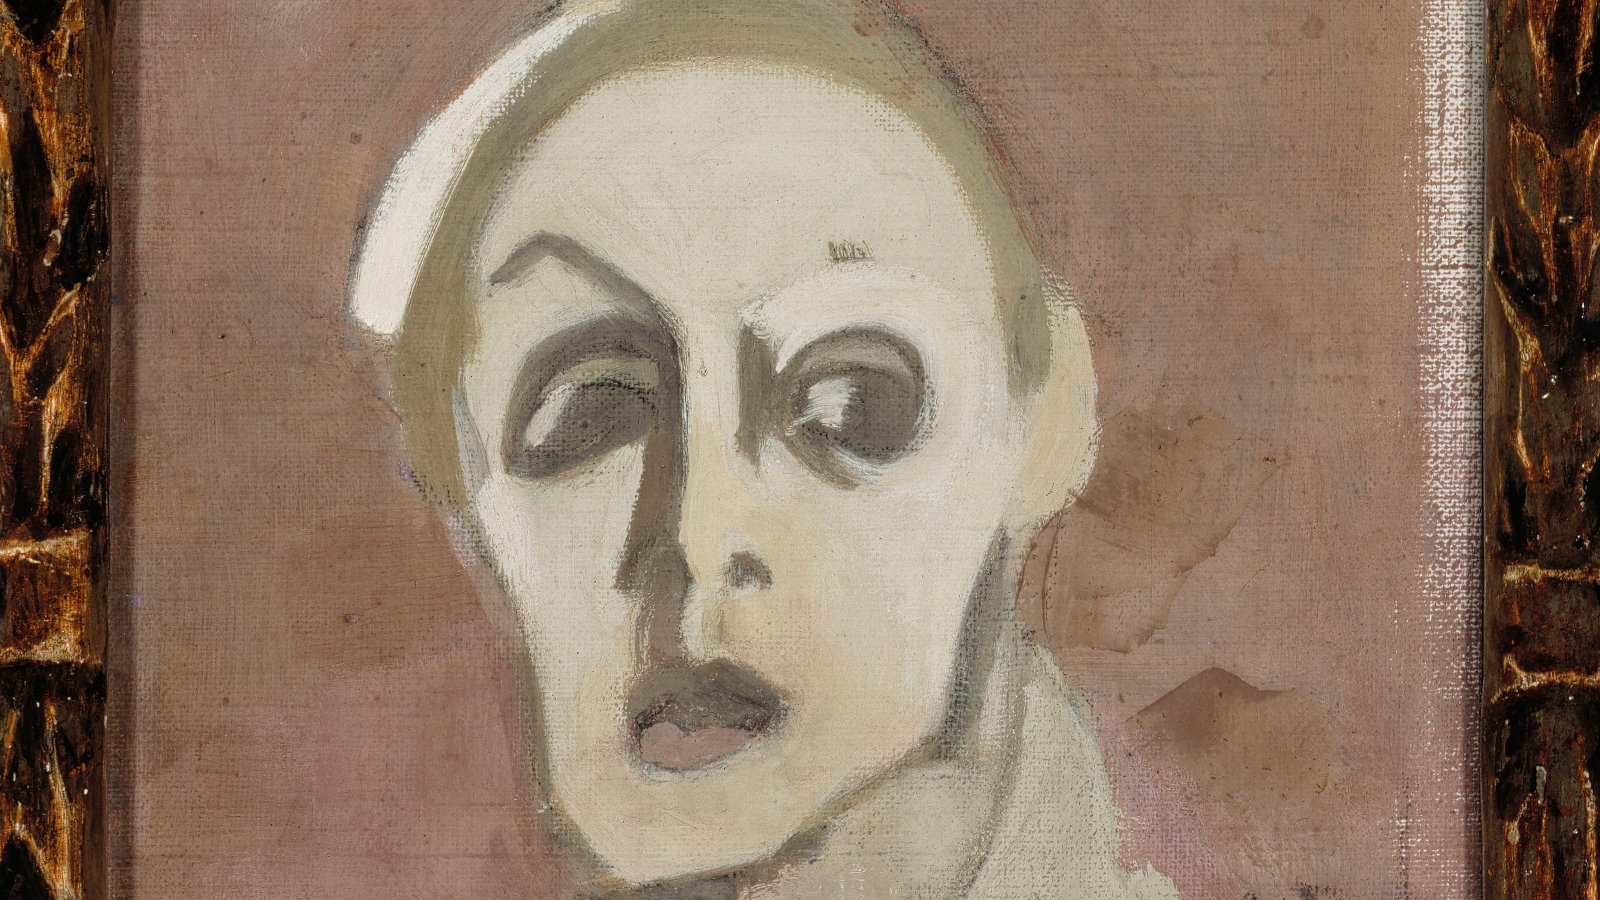 Kuvassa on Helene Schjerfbeckin Mustasuinen omakuva.  Kuva on ruskean ja harmaan sävyinen.